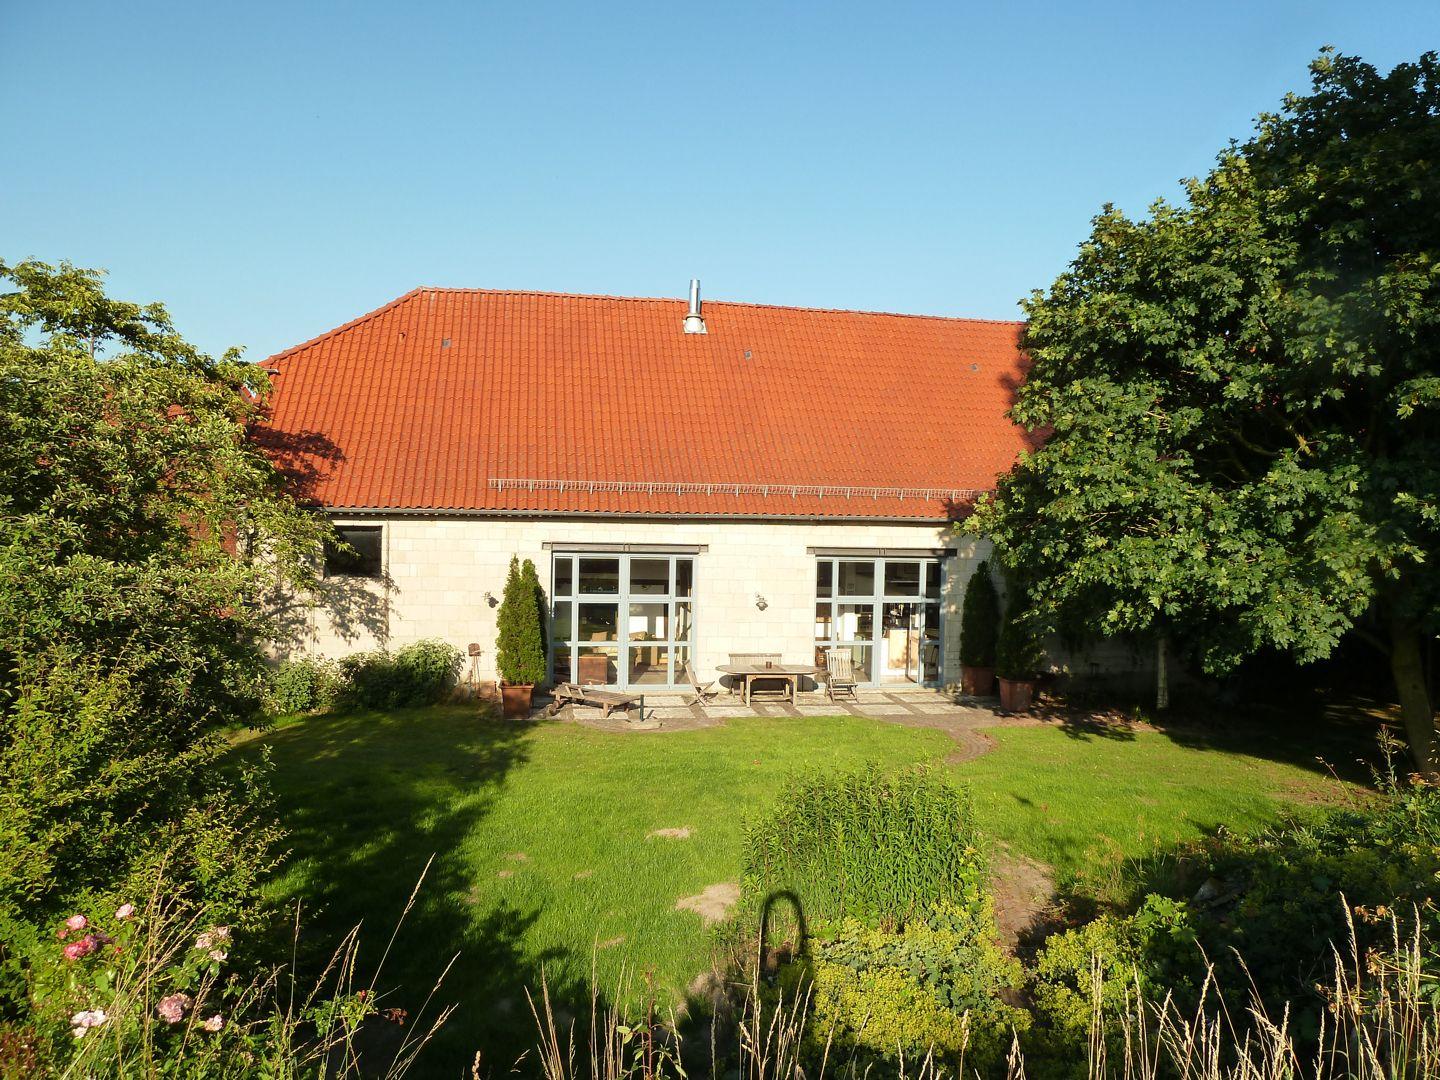 Ferienhaus in Weenzen mit Großem Garten Ferienhaus in Deutschland